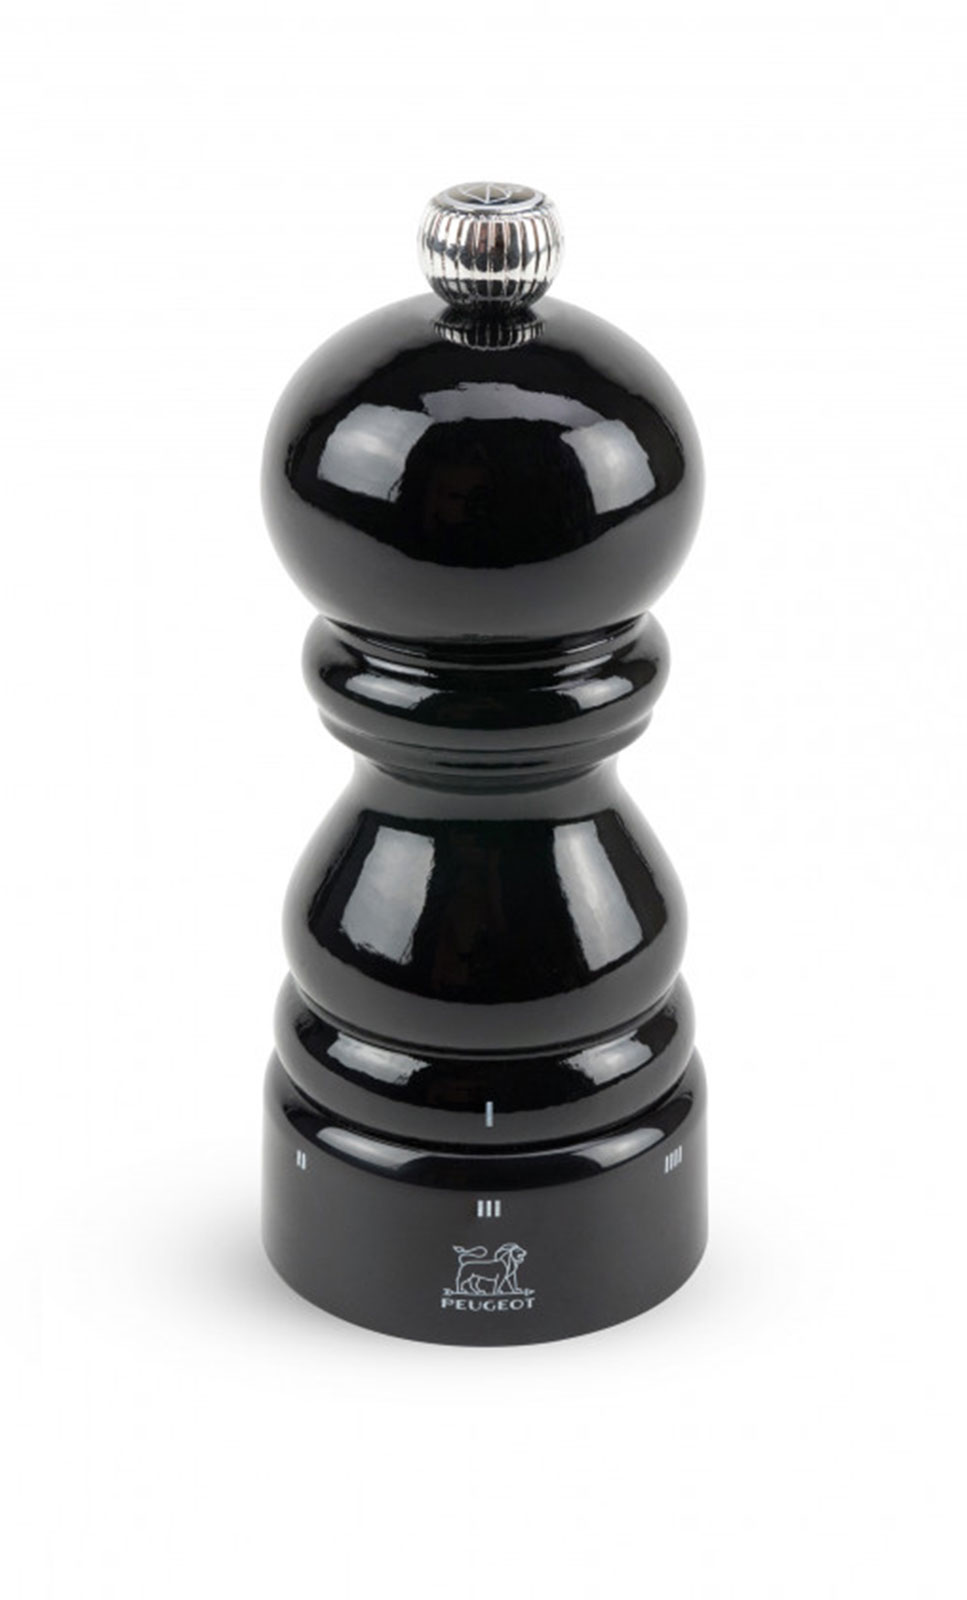 Peugeot Paris Salzmühle U Select schwarz lackiert 12cm